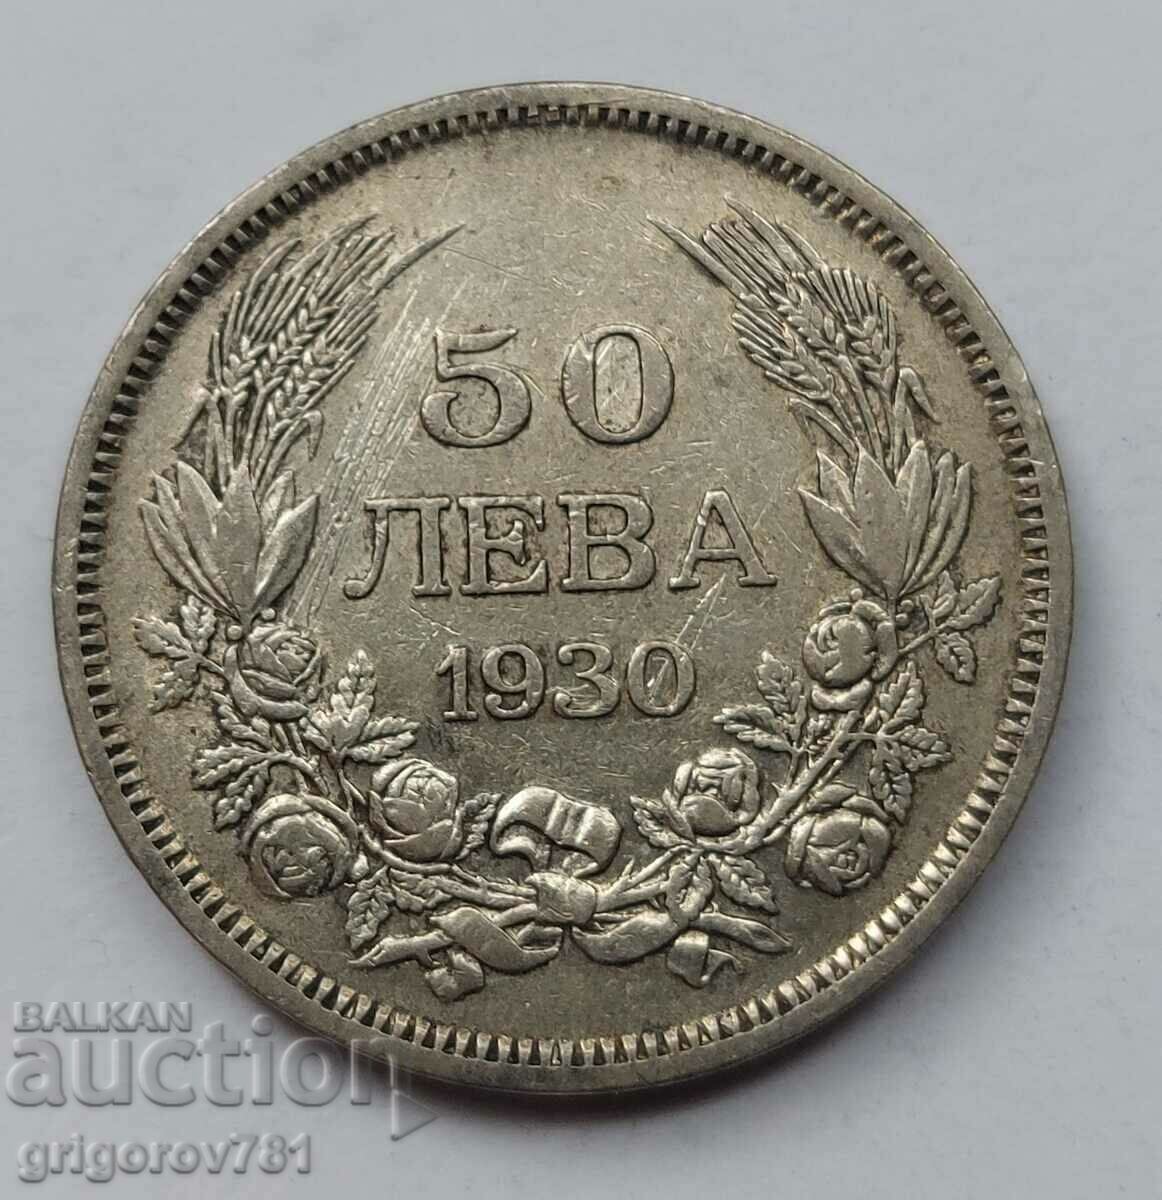 Ασήμι 50 λέβα Βουλγαρία 1930 - ασημένιο νόμισμα #74